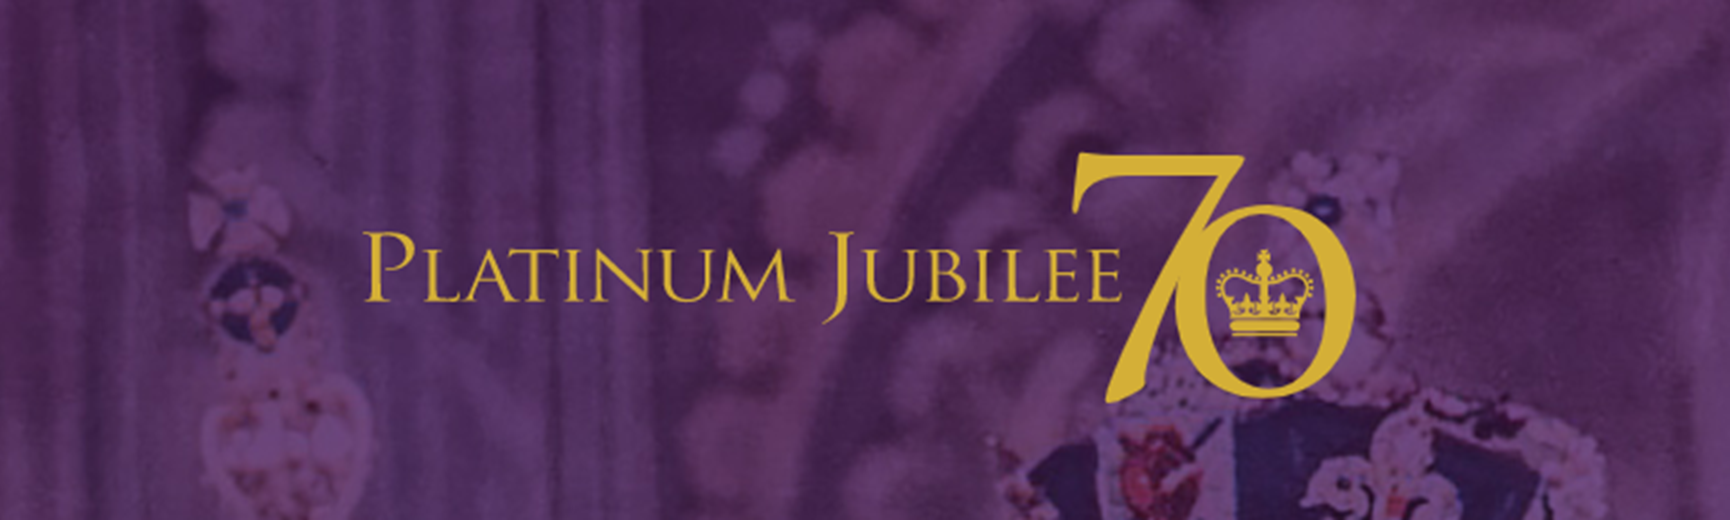 jubilee-banner